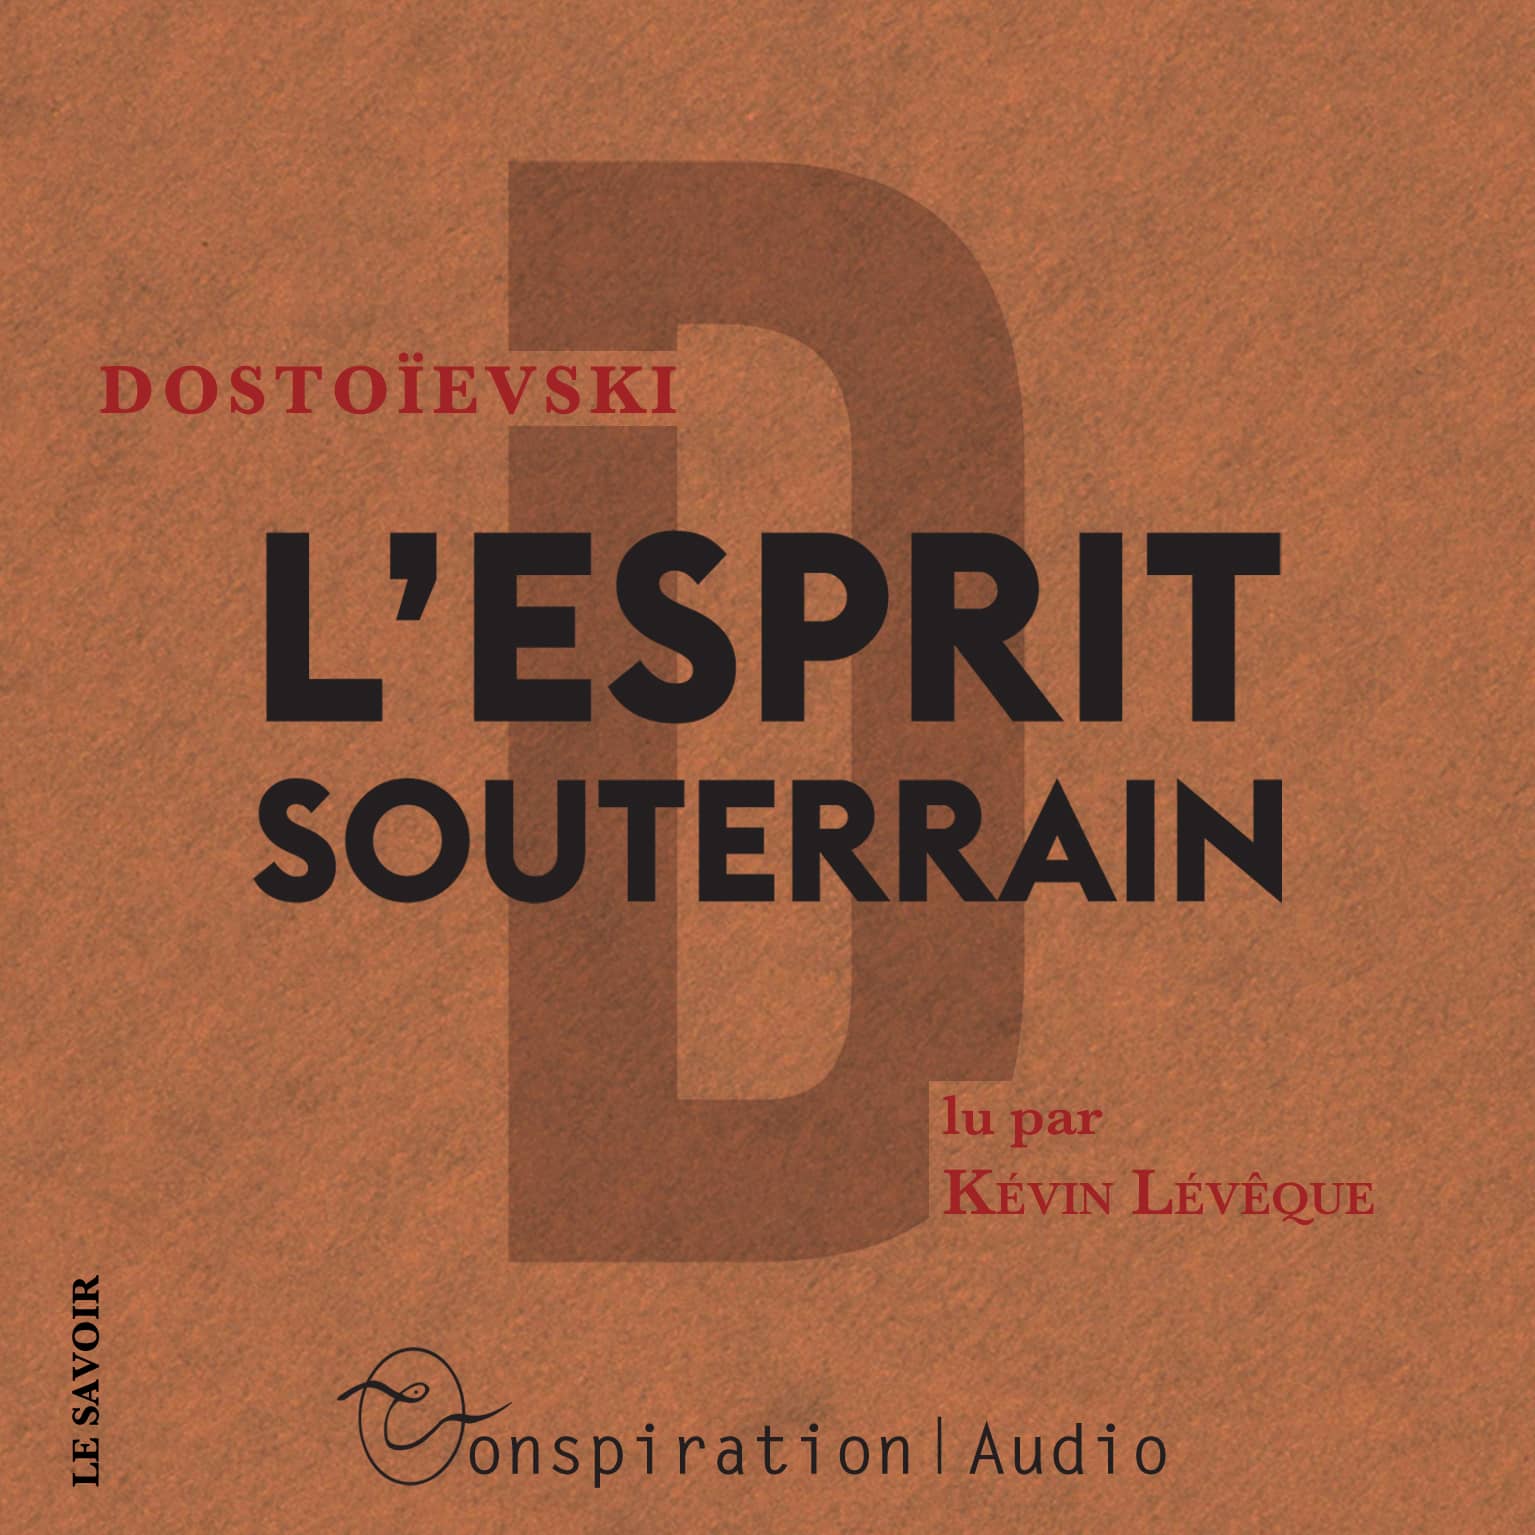 Couverture du livre audio L'esprit souterrain De Fiodor Dostoievski 